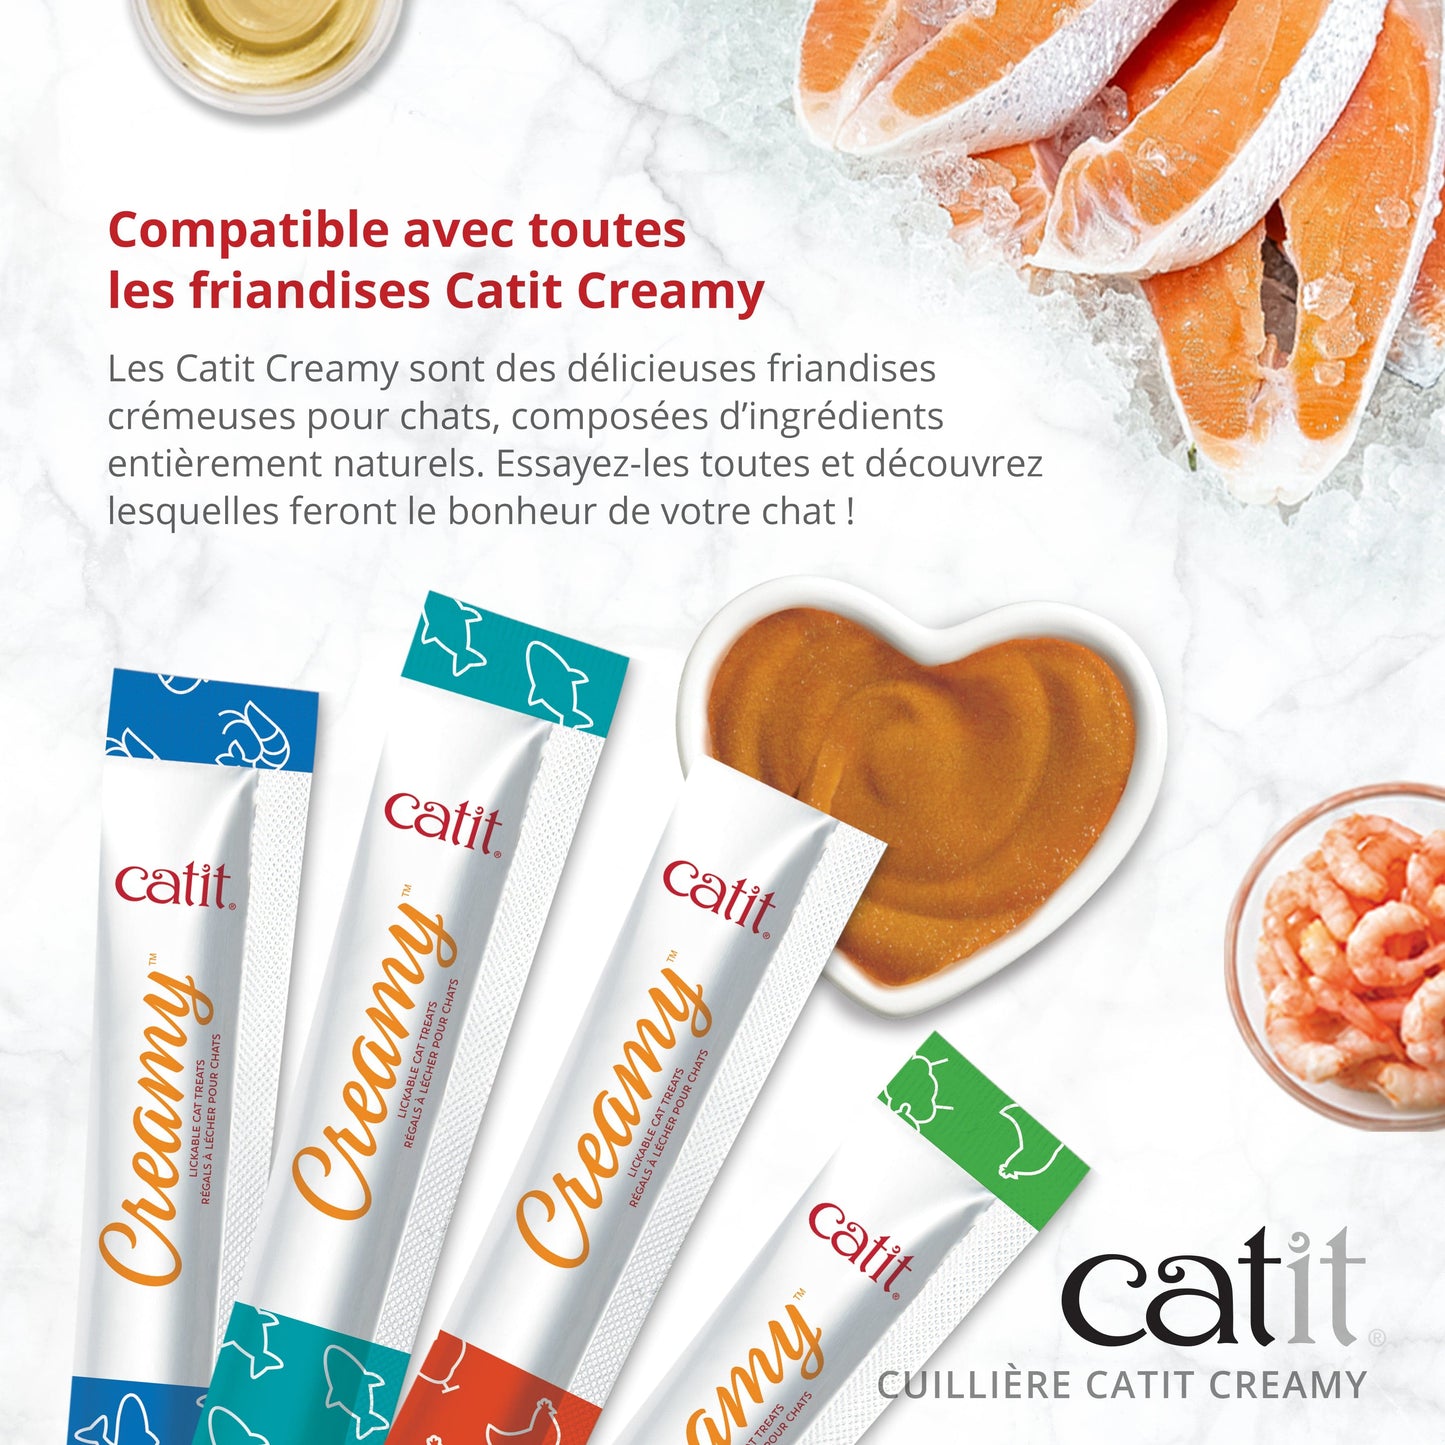 Cuillière Catit Creamy, paquet de 3